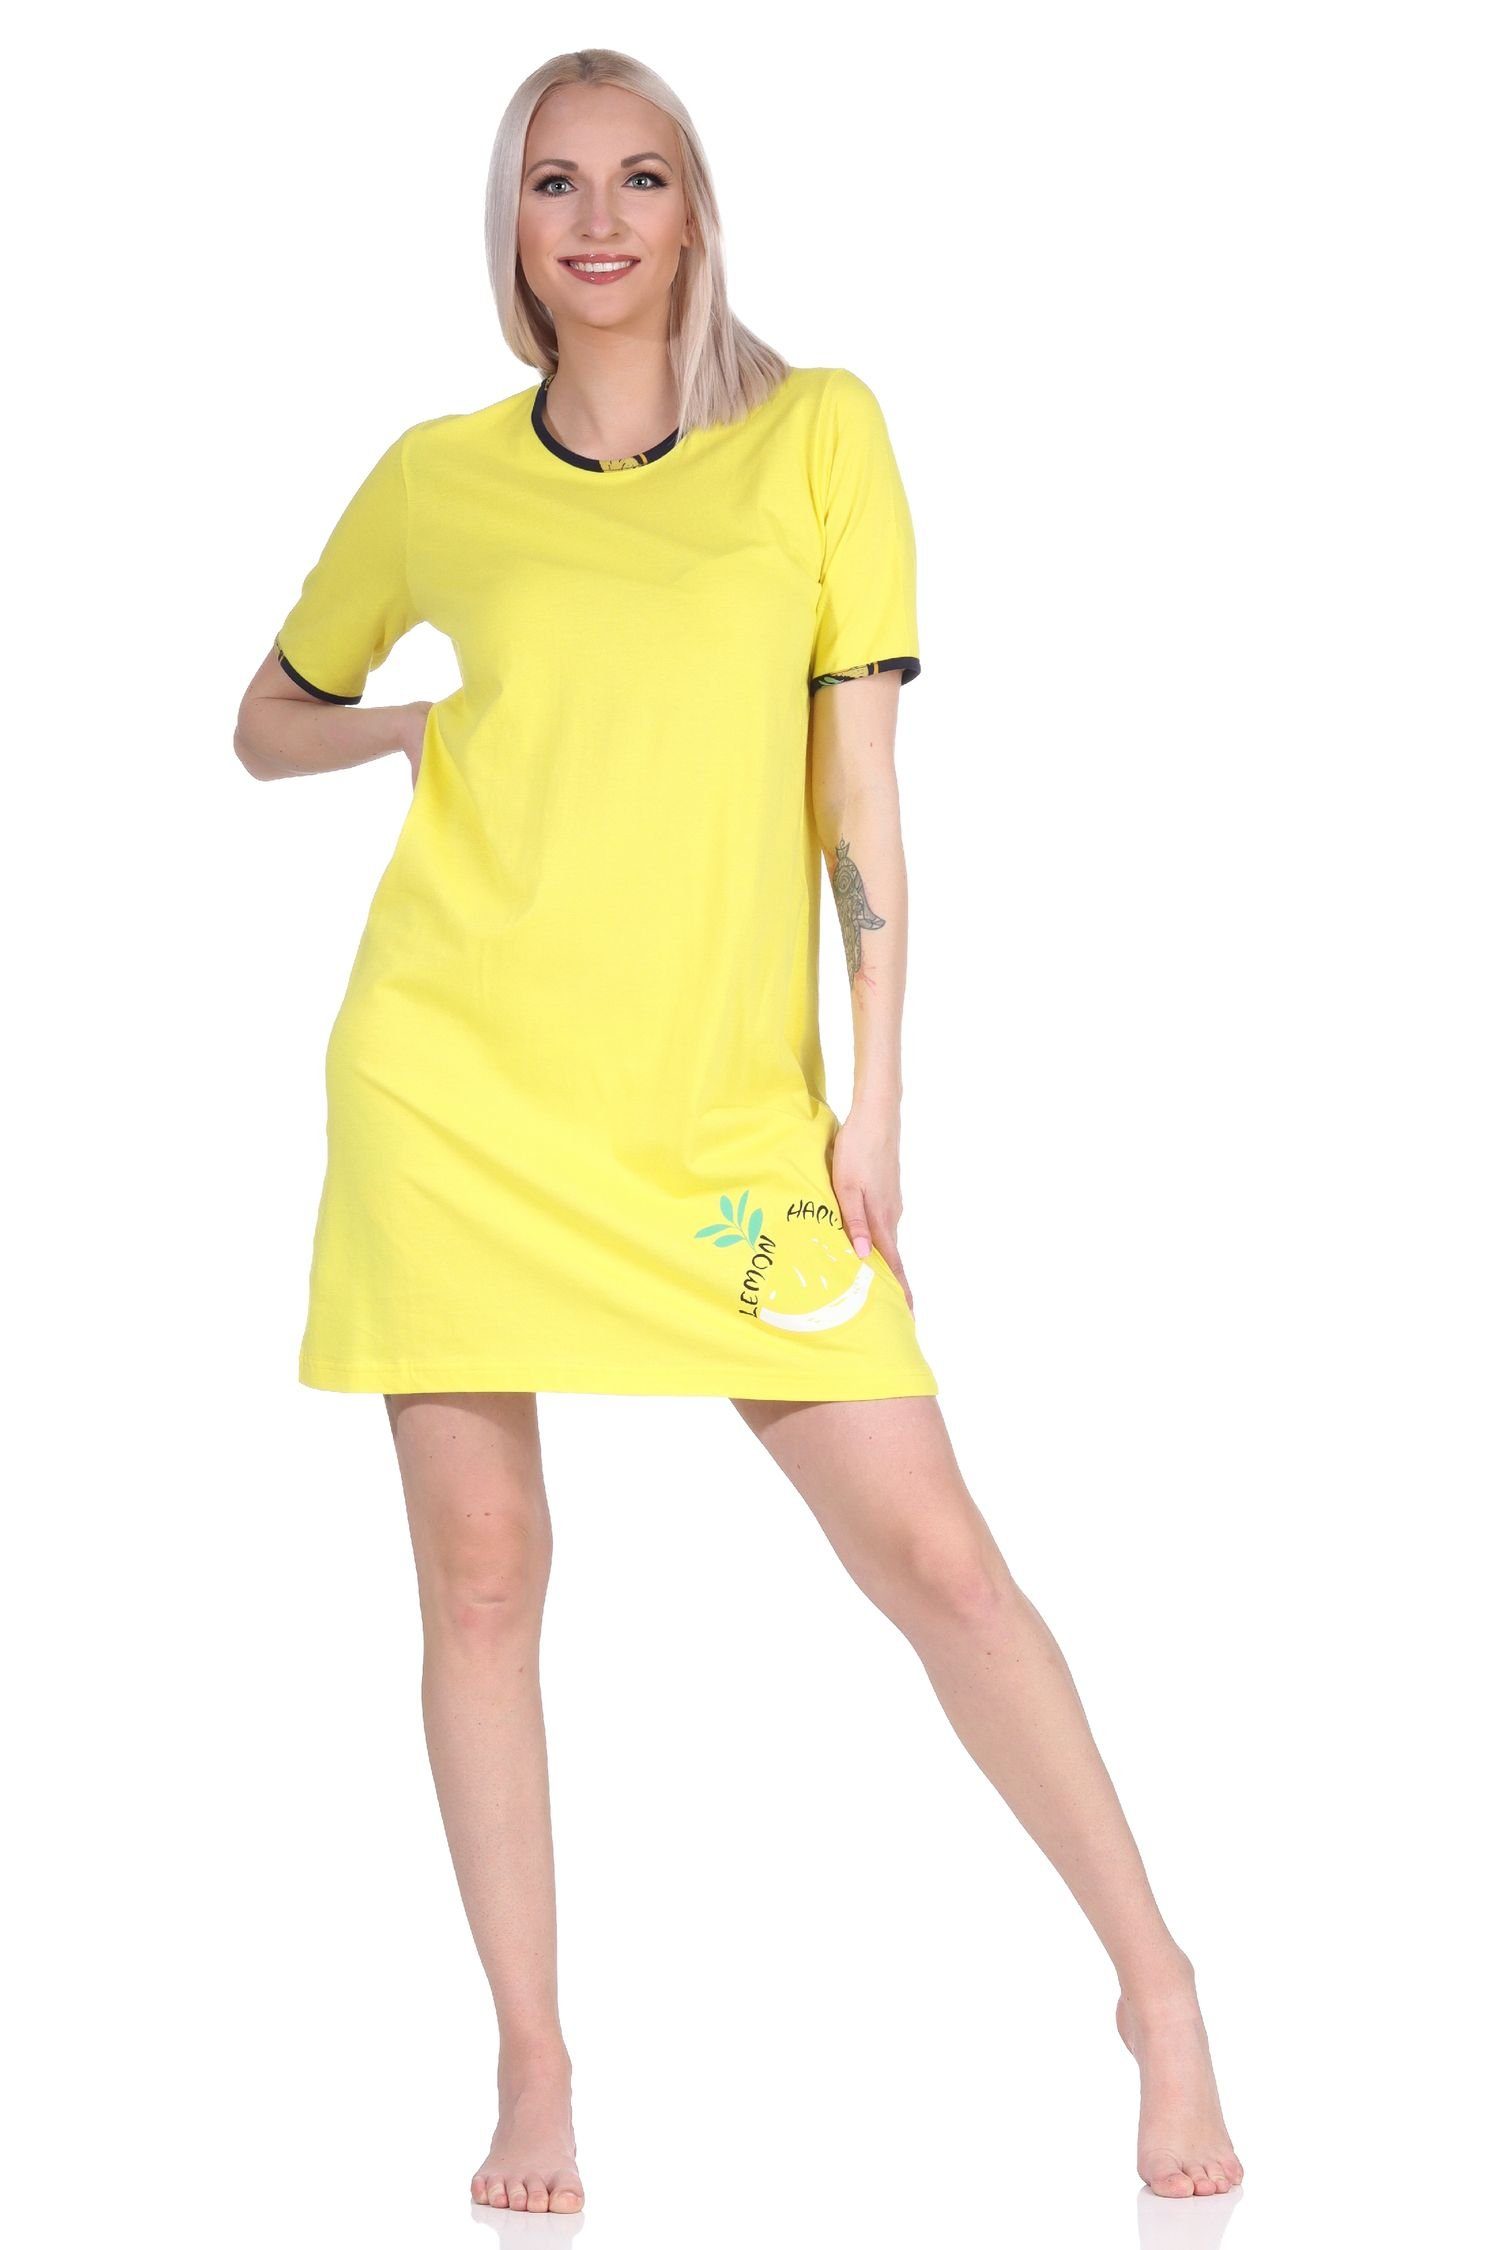 Normann Nachthemd Süsses kurzarm Damen Nachthemd mit Zitronen als Motiv - 122 535 gelb